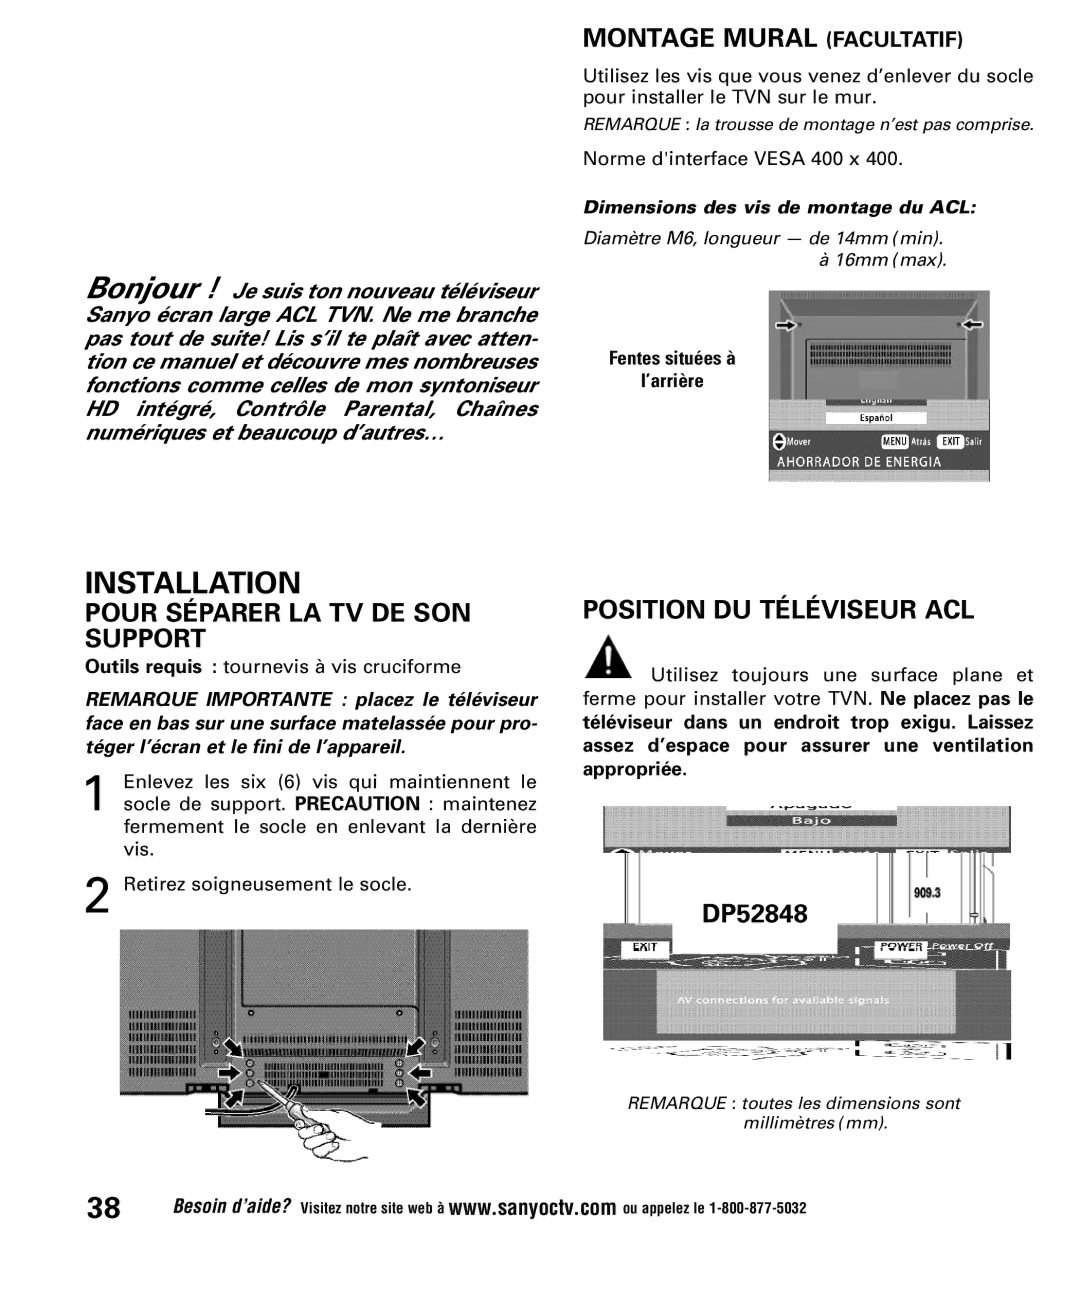 Sanyo DP52848 owner manual Montage Mural Facultatif, Pour Séparer LA TV DE SON Support, Position DU Téléviseur ACL 